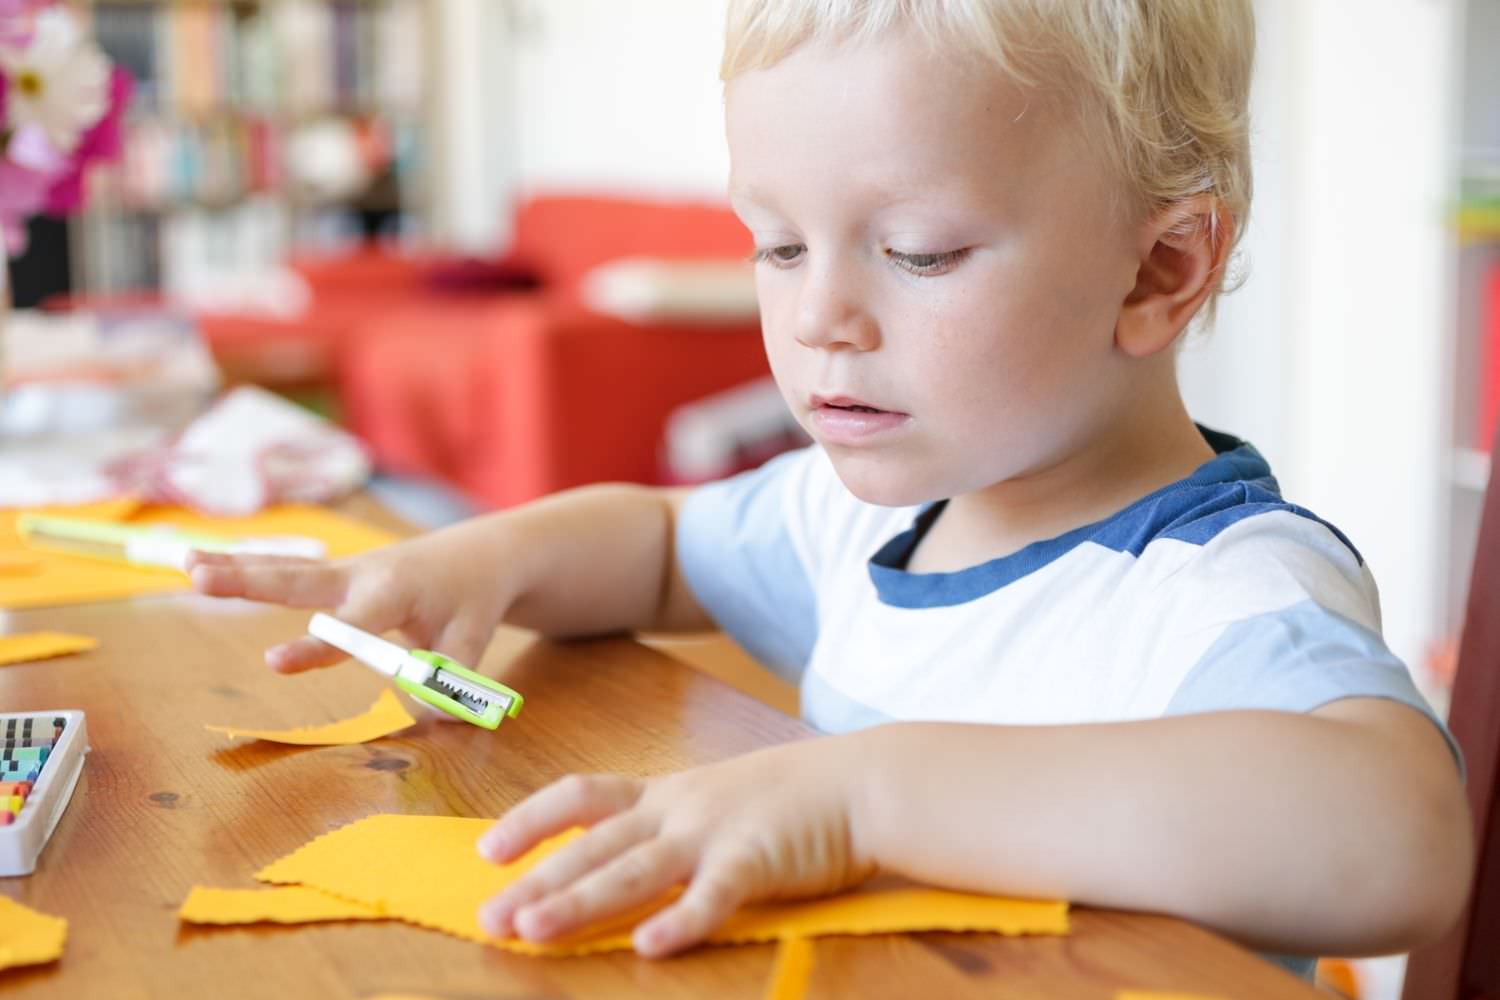 Bild zeigt: Kleiner Junge sitzt am Tisch und schneidet Papier